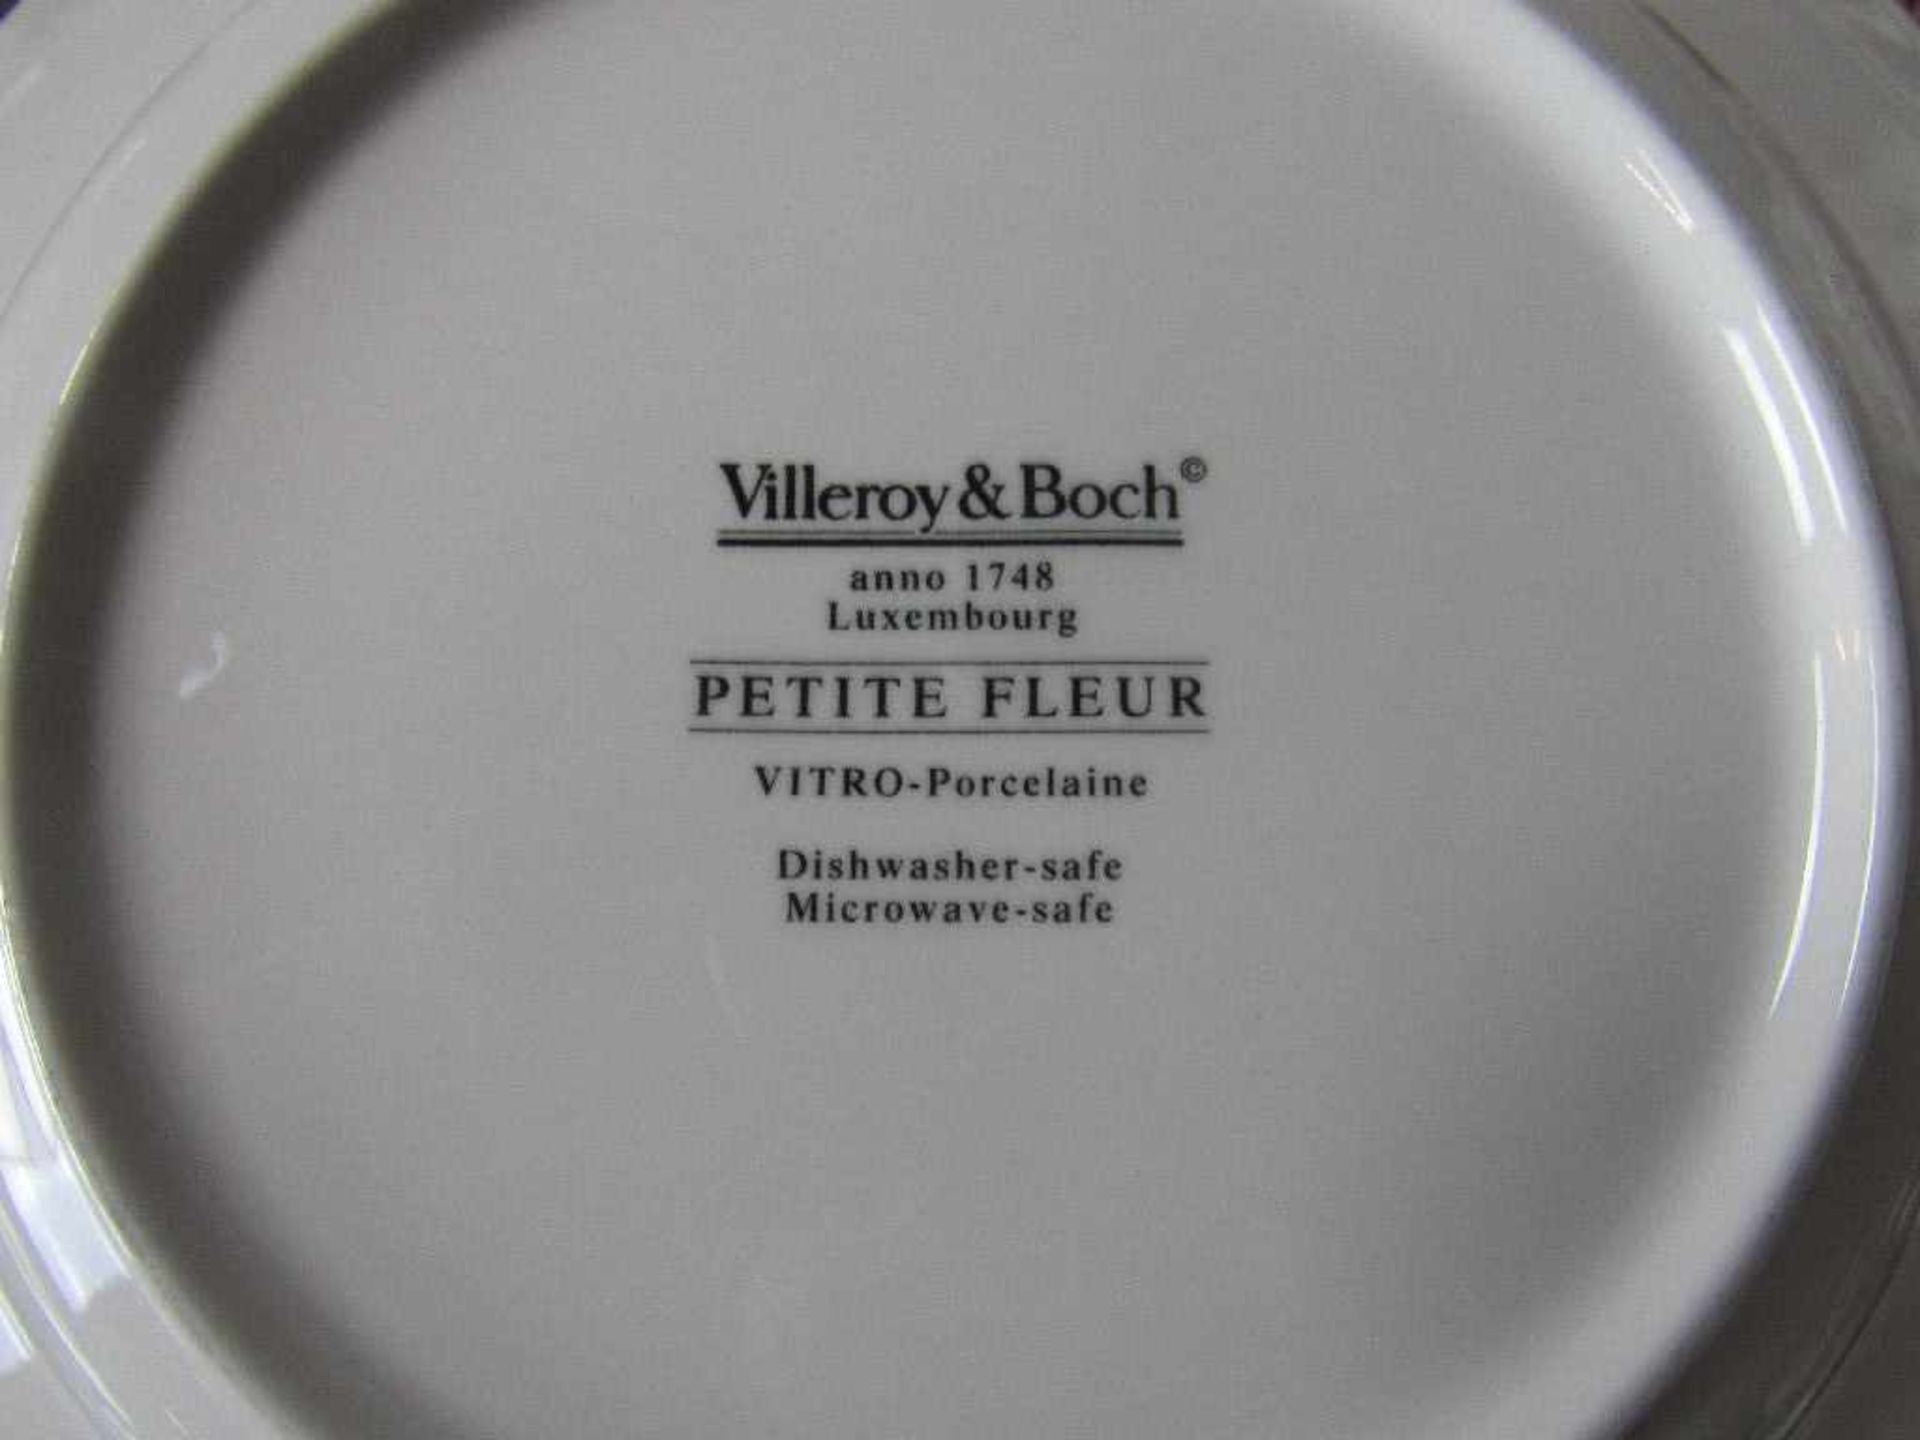 Geschirr Villeroy&Boch Modell Petite Fleur 110 Teile teilweise gechipt unvollständig - Image 6 of 7